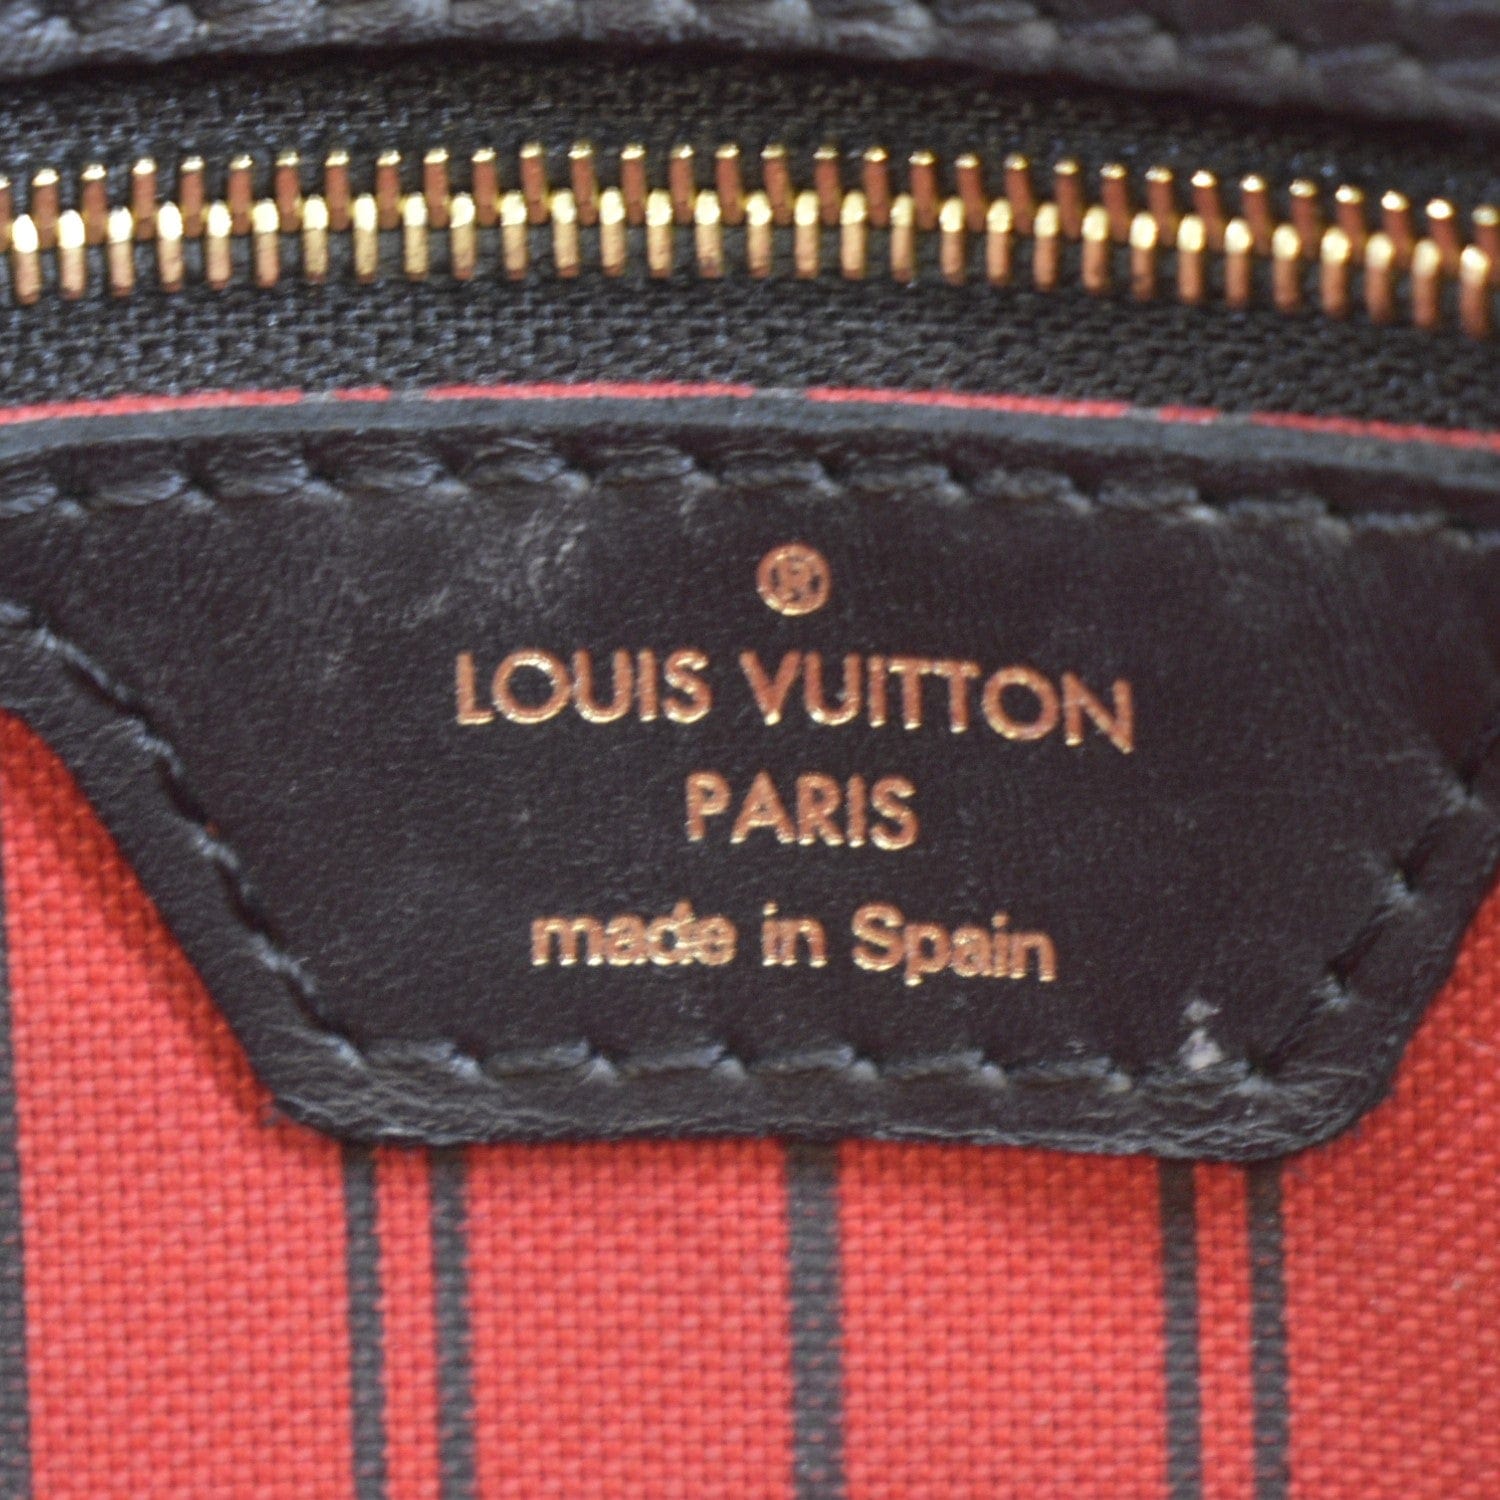 SOLD) Brand New Louis Vuitton Damier Ebene Neverfull Karakoram